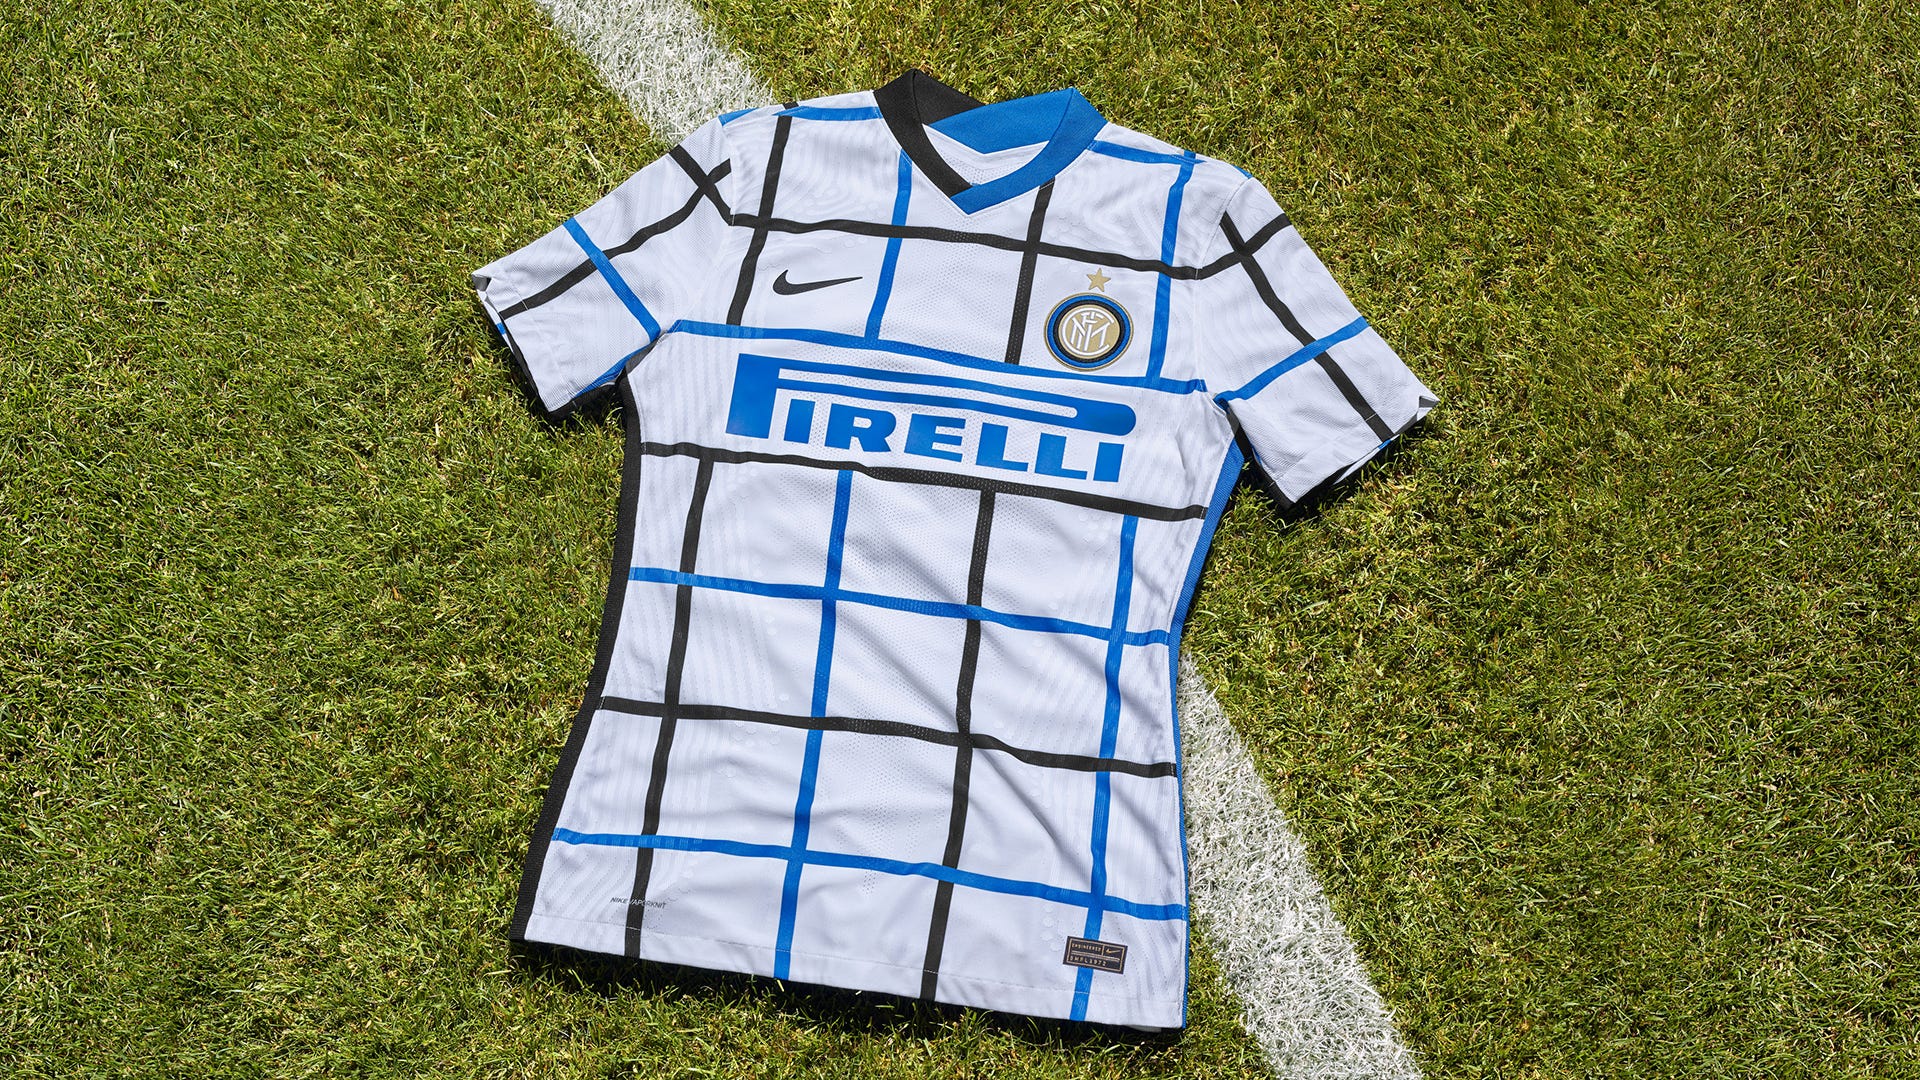 2020-21 Everton Home/Second Away Soccer Jersey Short Sleeve Adult FOOTBALL Shirt 